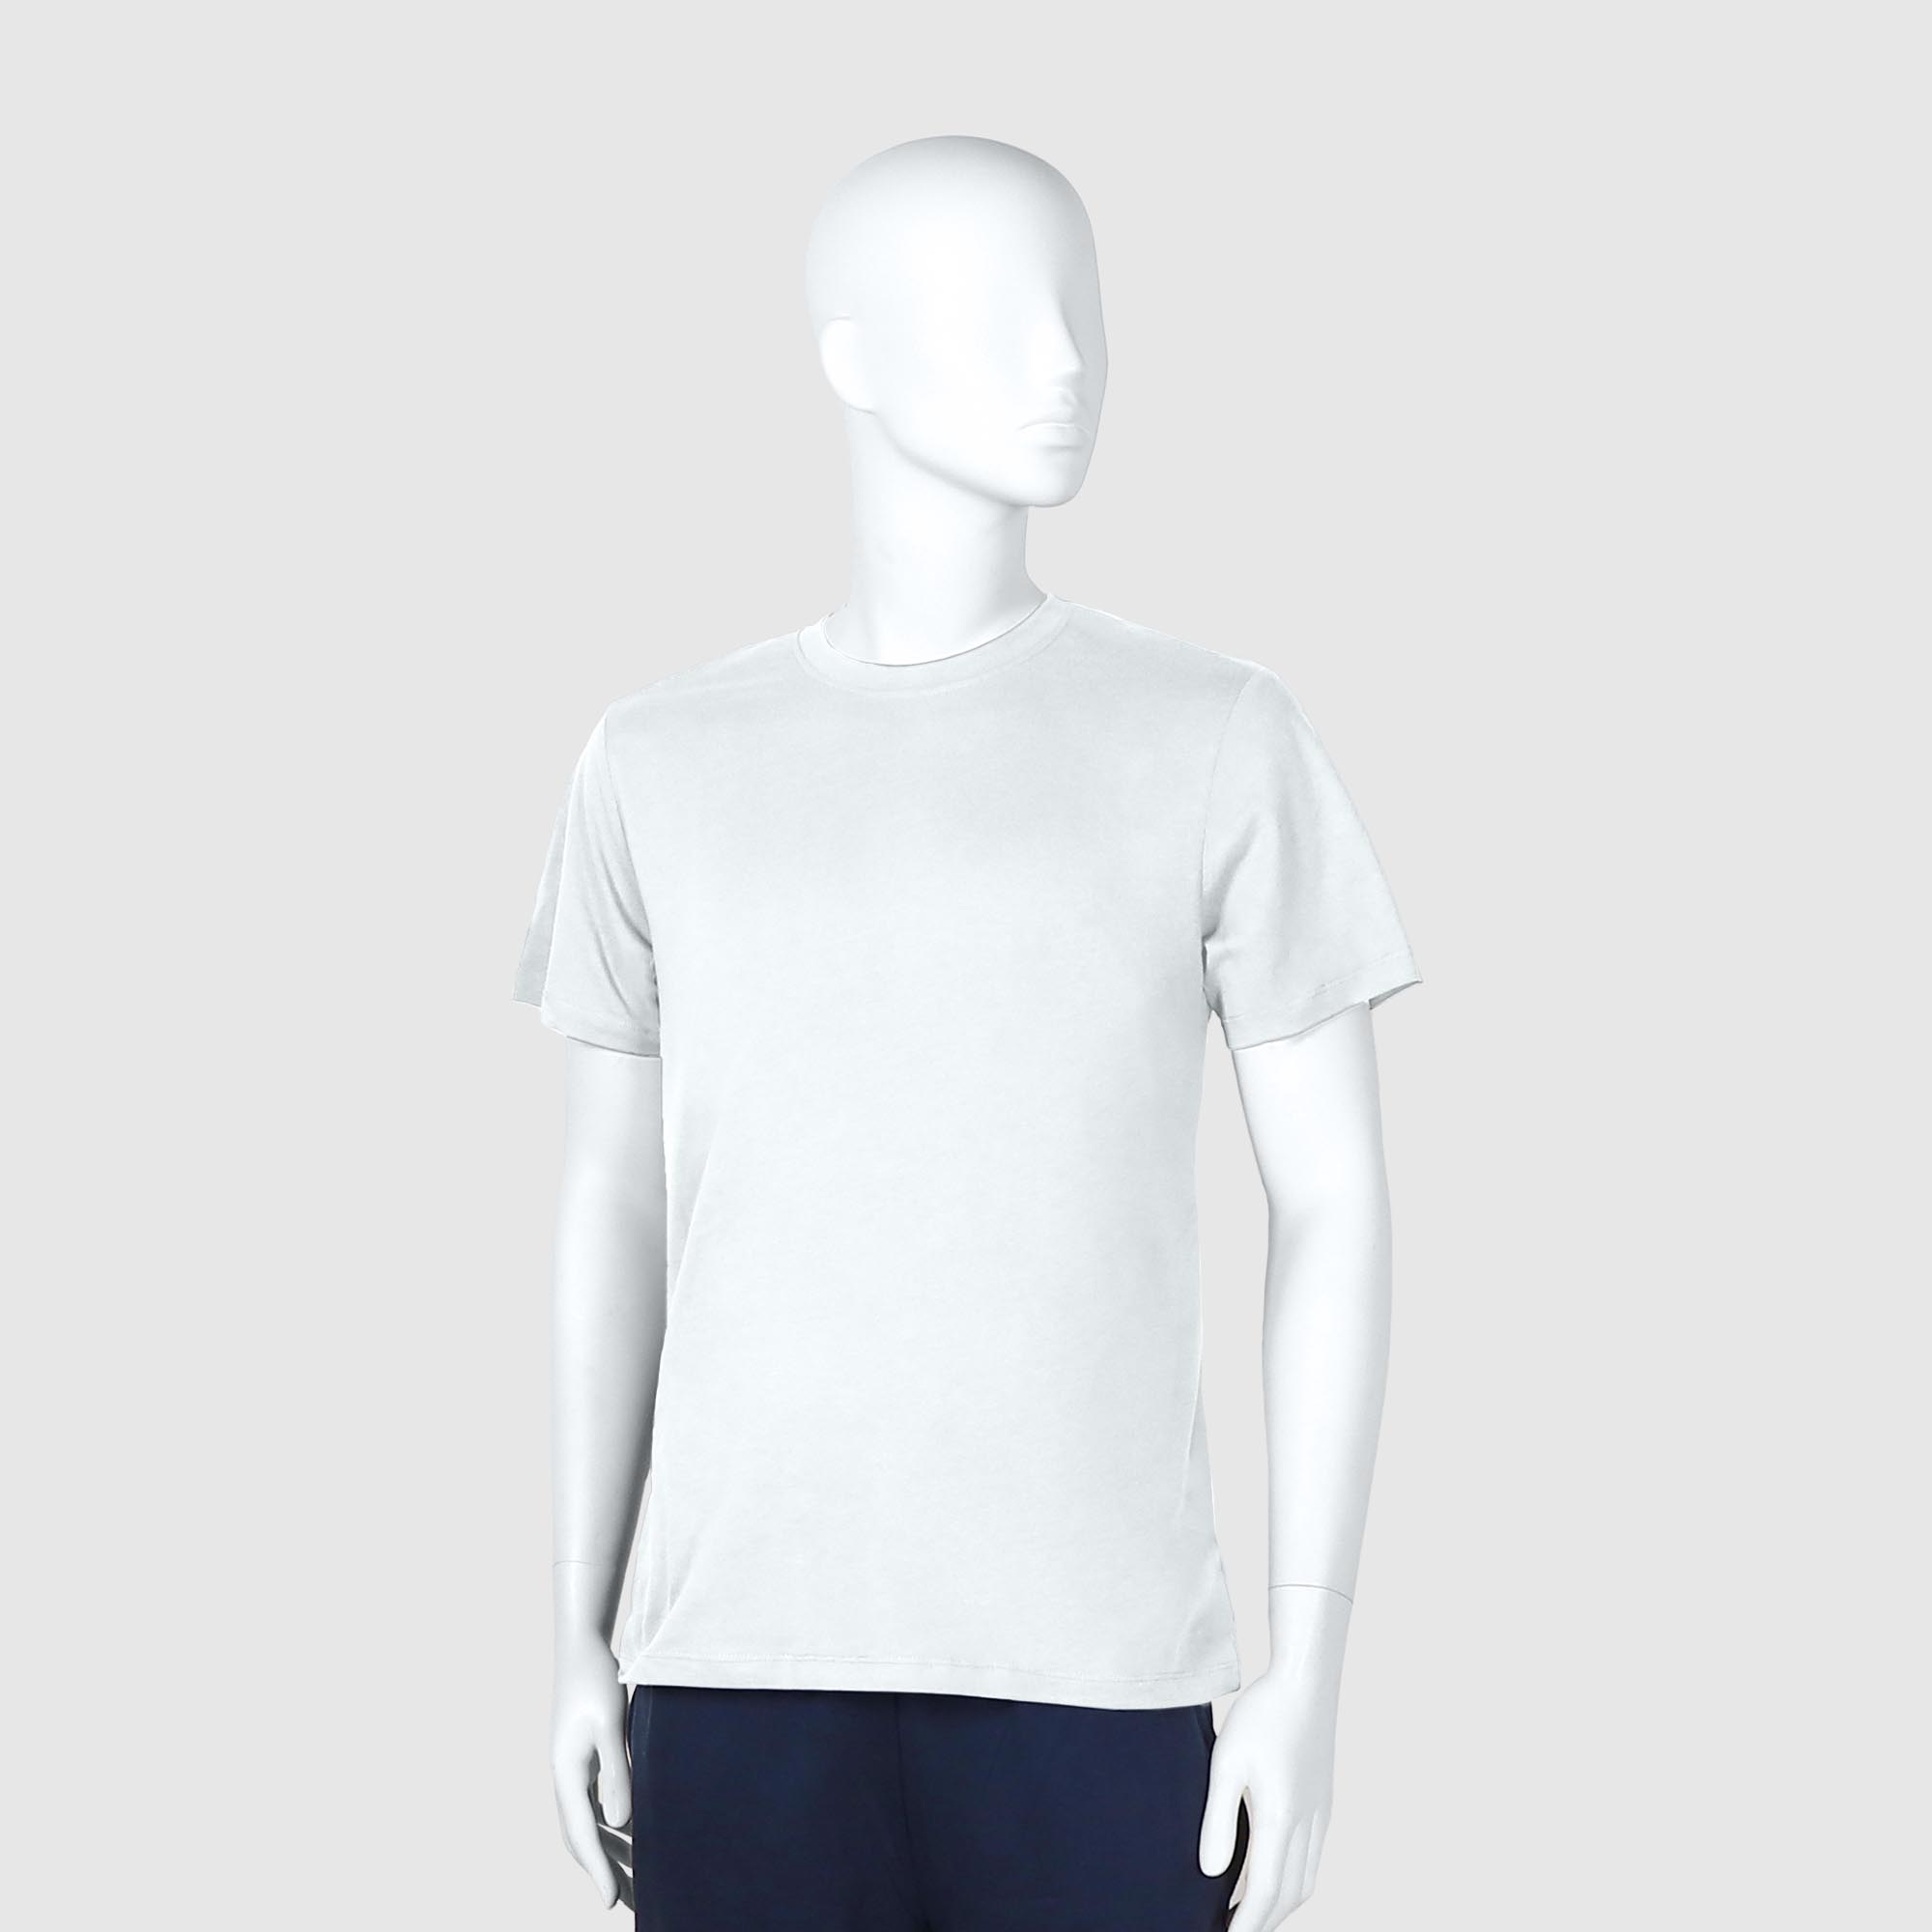 Мужская футболка Diva Teks белая (DTD-02), цвет белый, размер 52-54